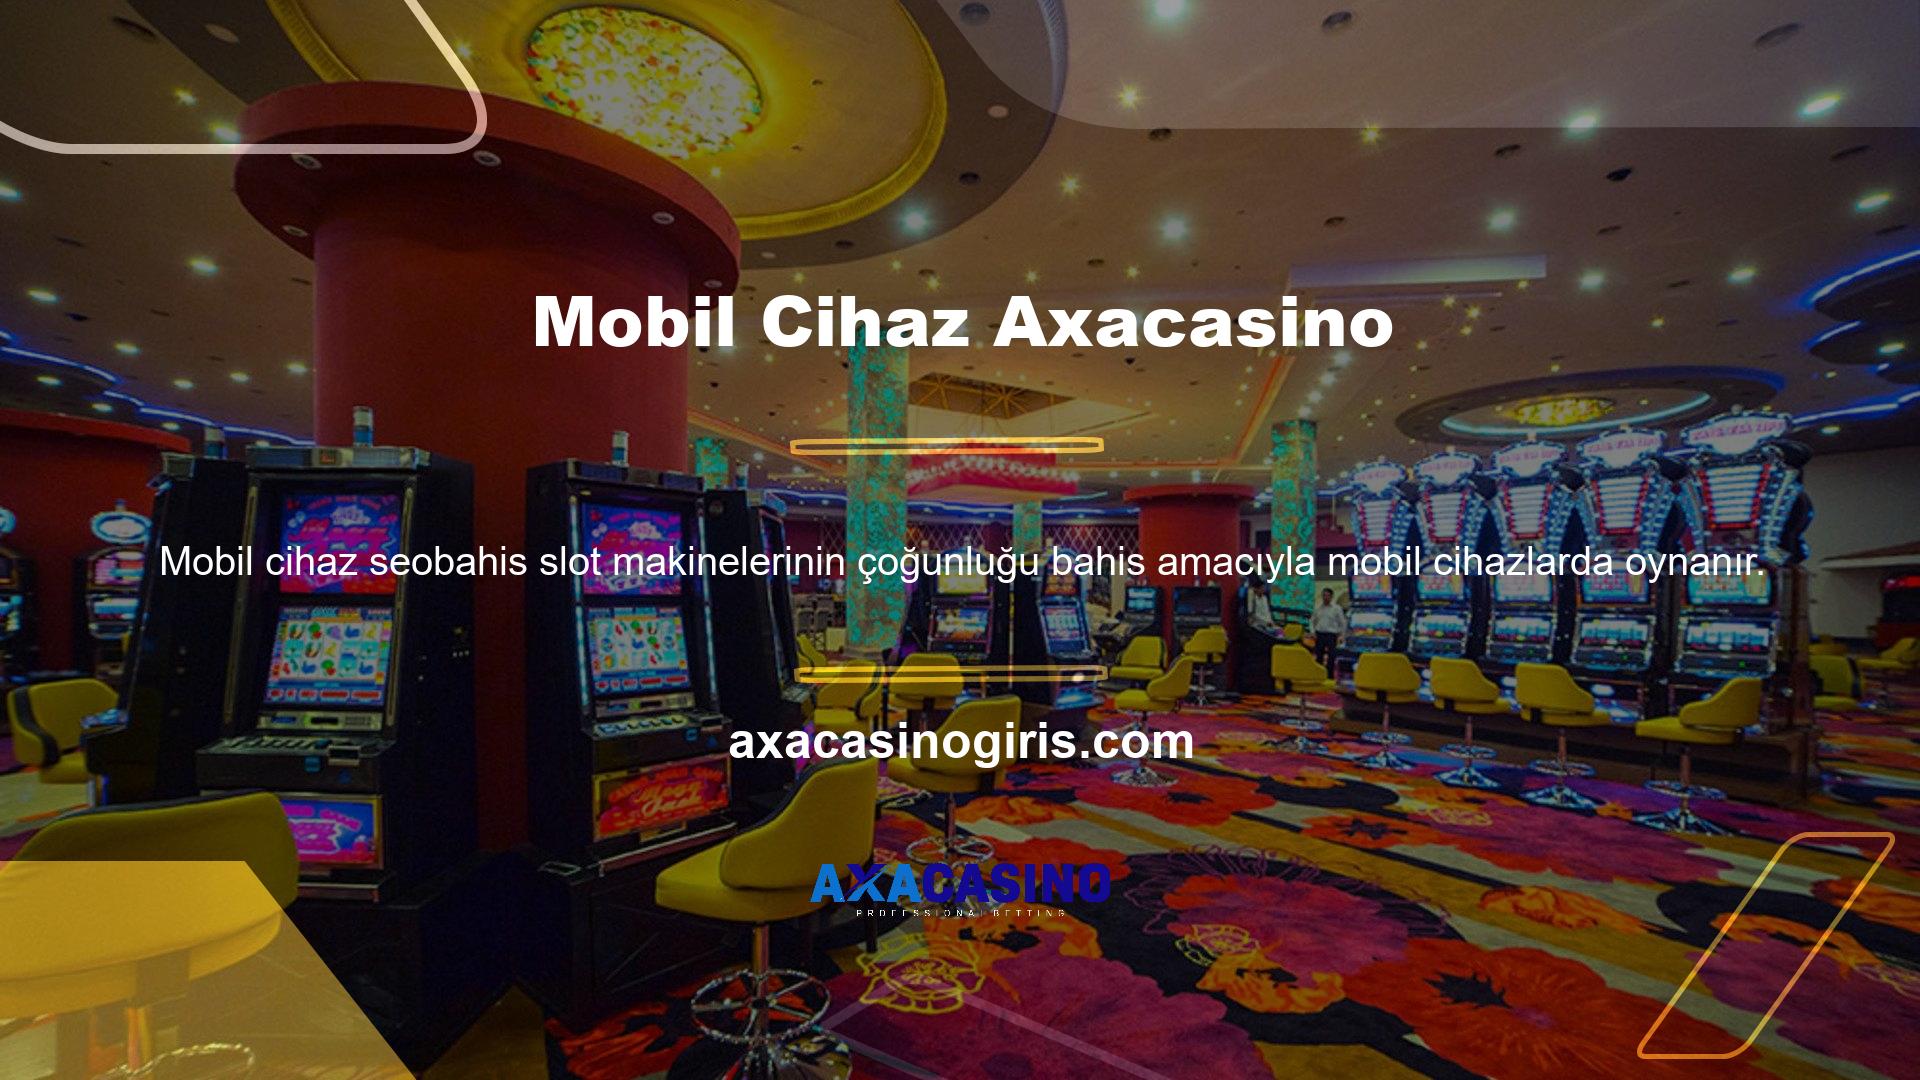 Axacasino casino mobil cihazlar için slot oyunları sunuyor mu? Sonuç olarak oyuna daha fazla pratiklik ve verimlilikle katılabilirsiniz